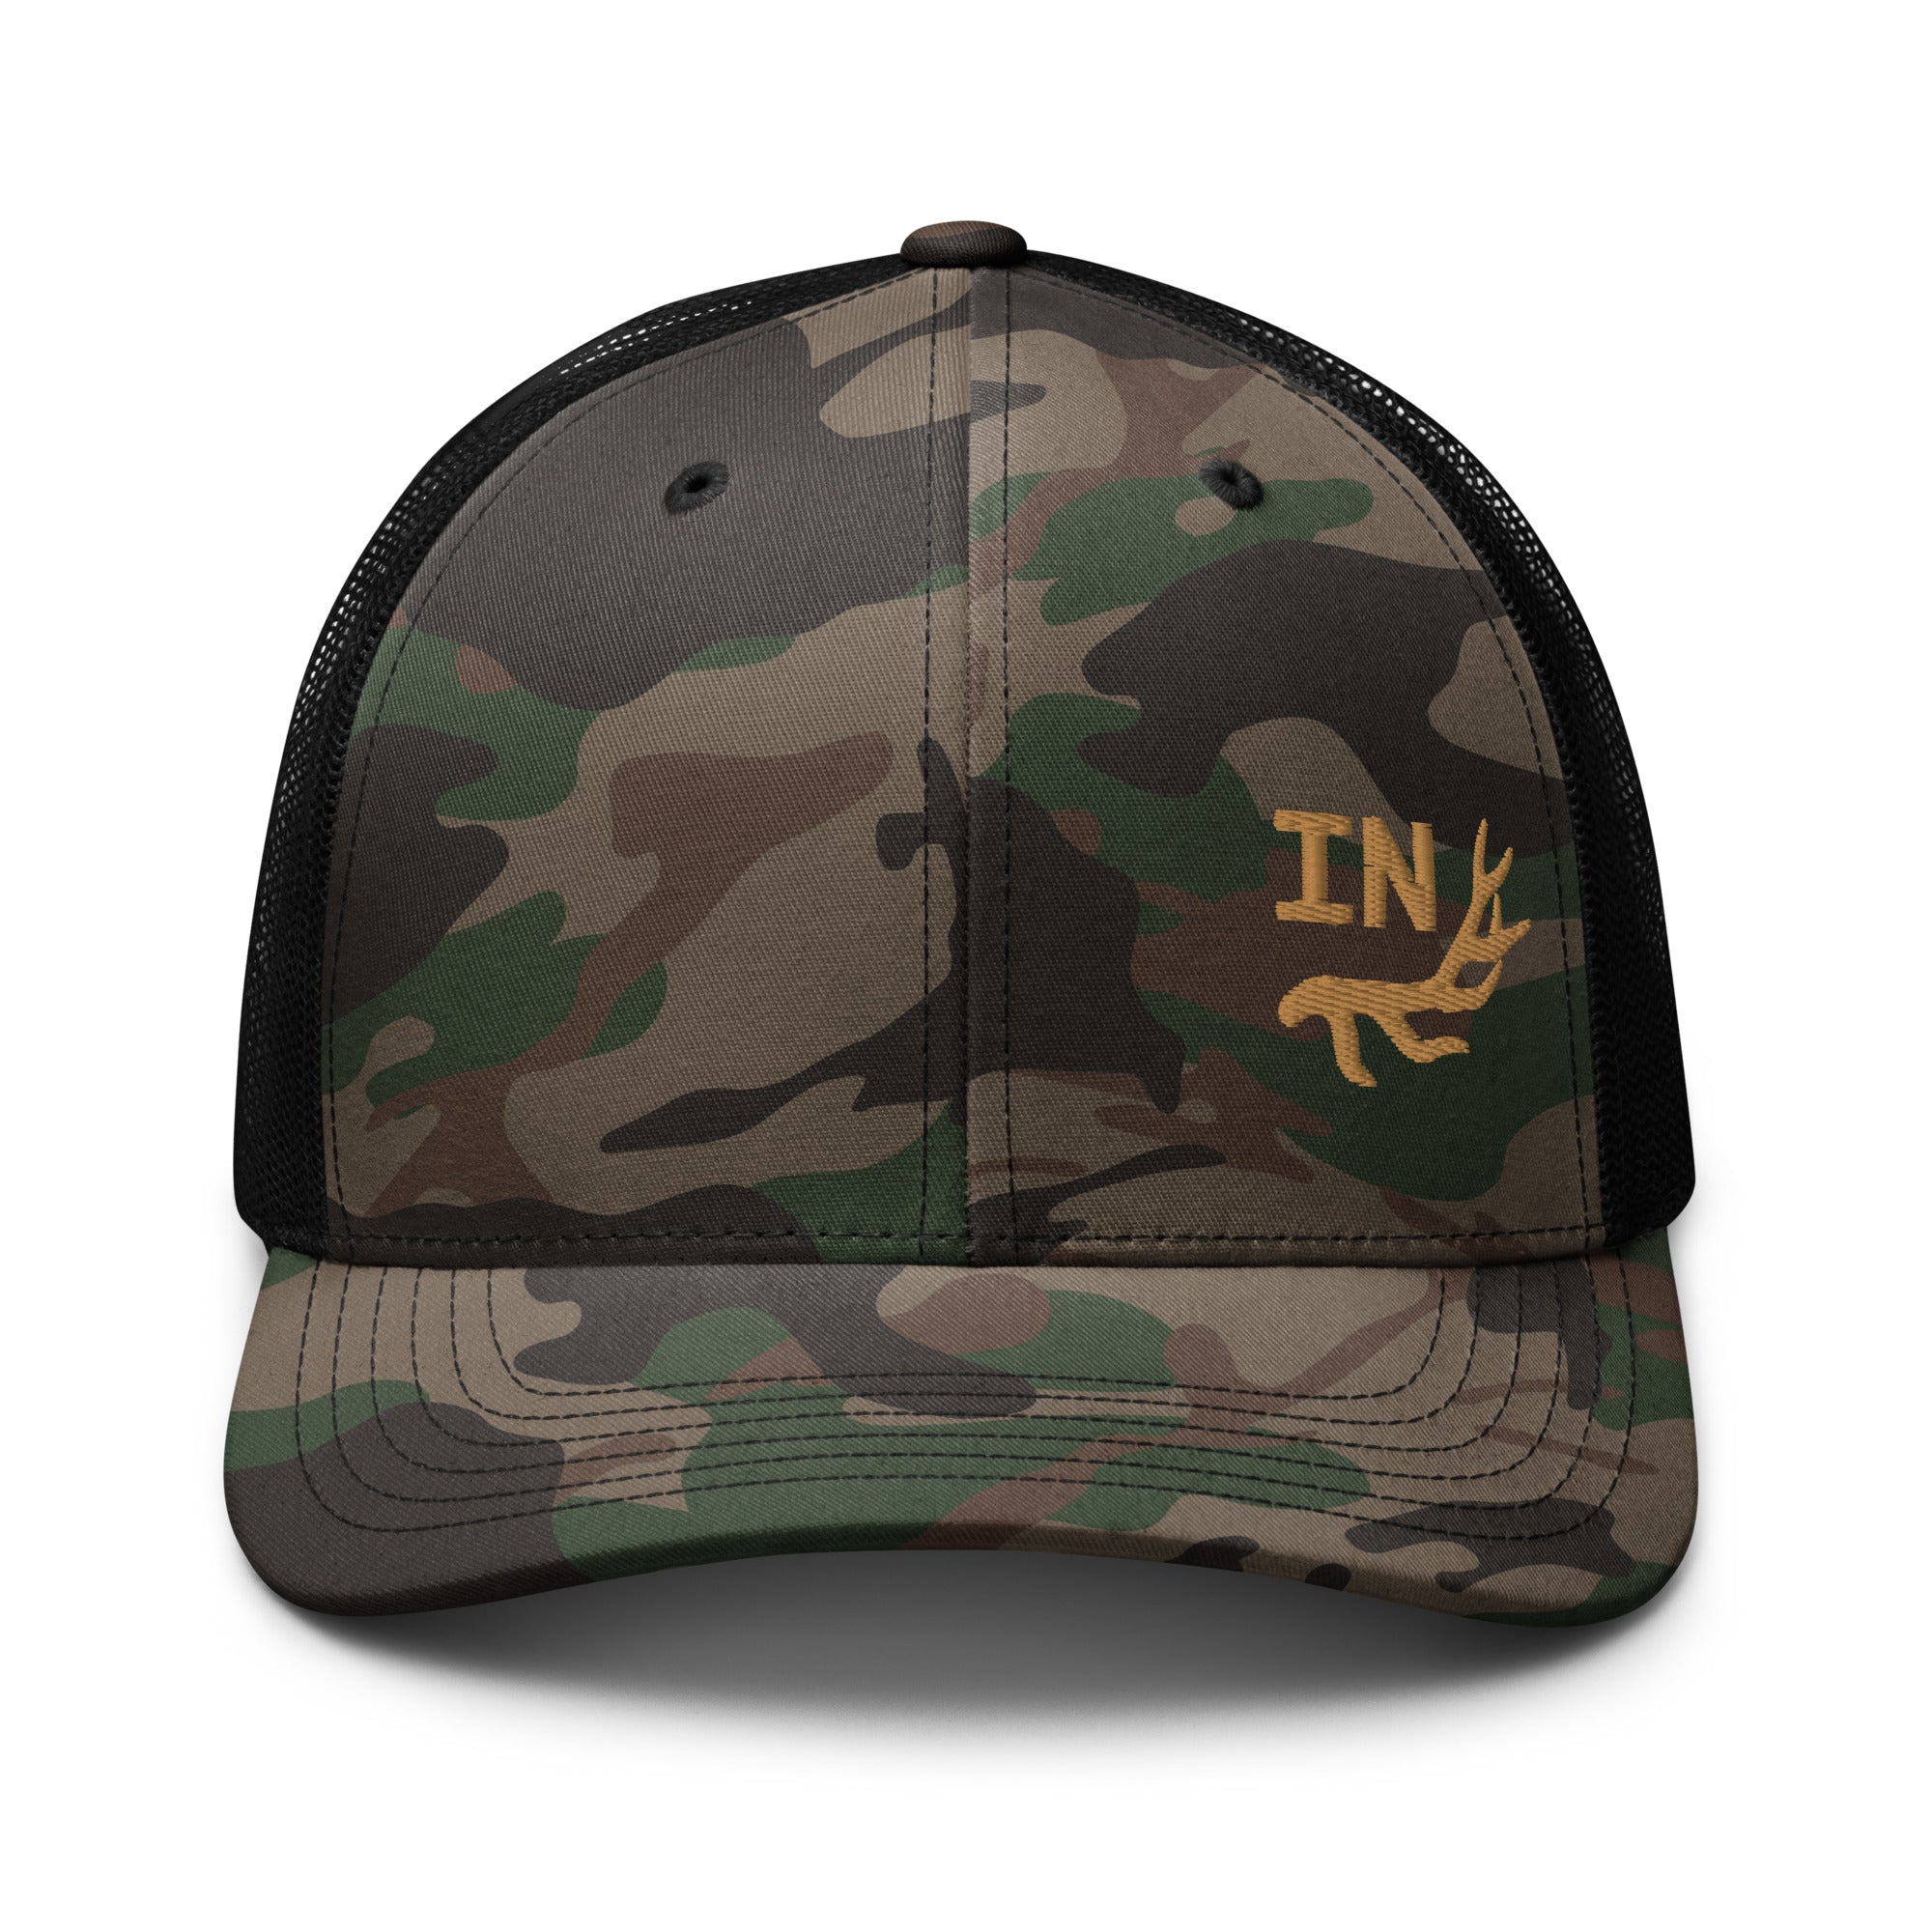 camouflage-trucker-hat-camo-black-front-655e6136e51e1.jpg